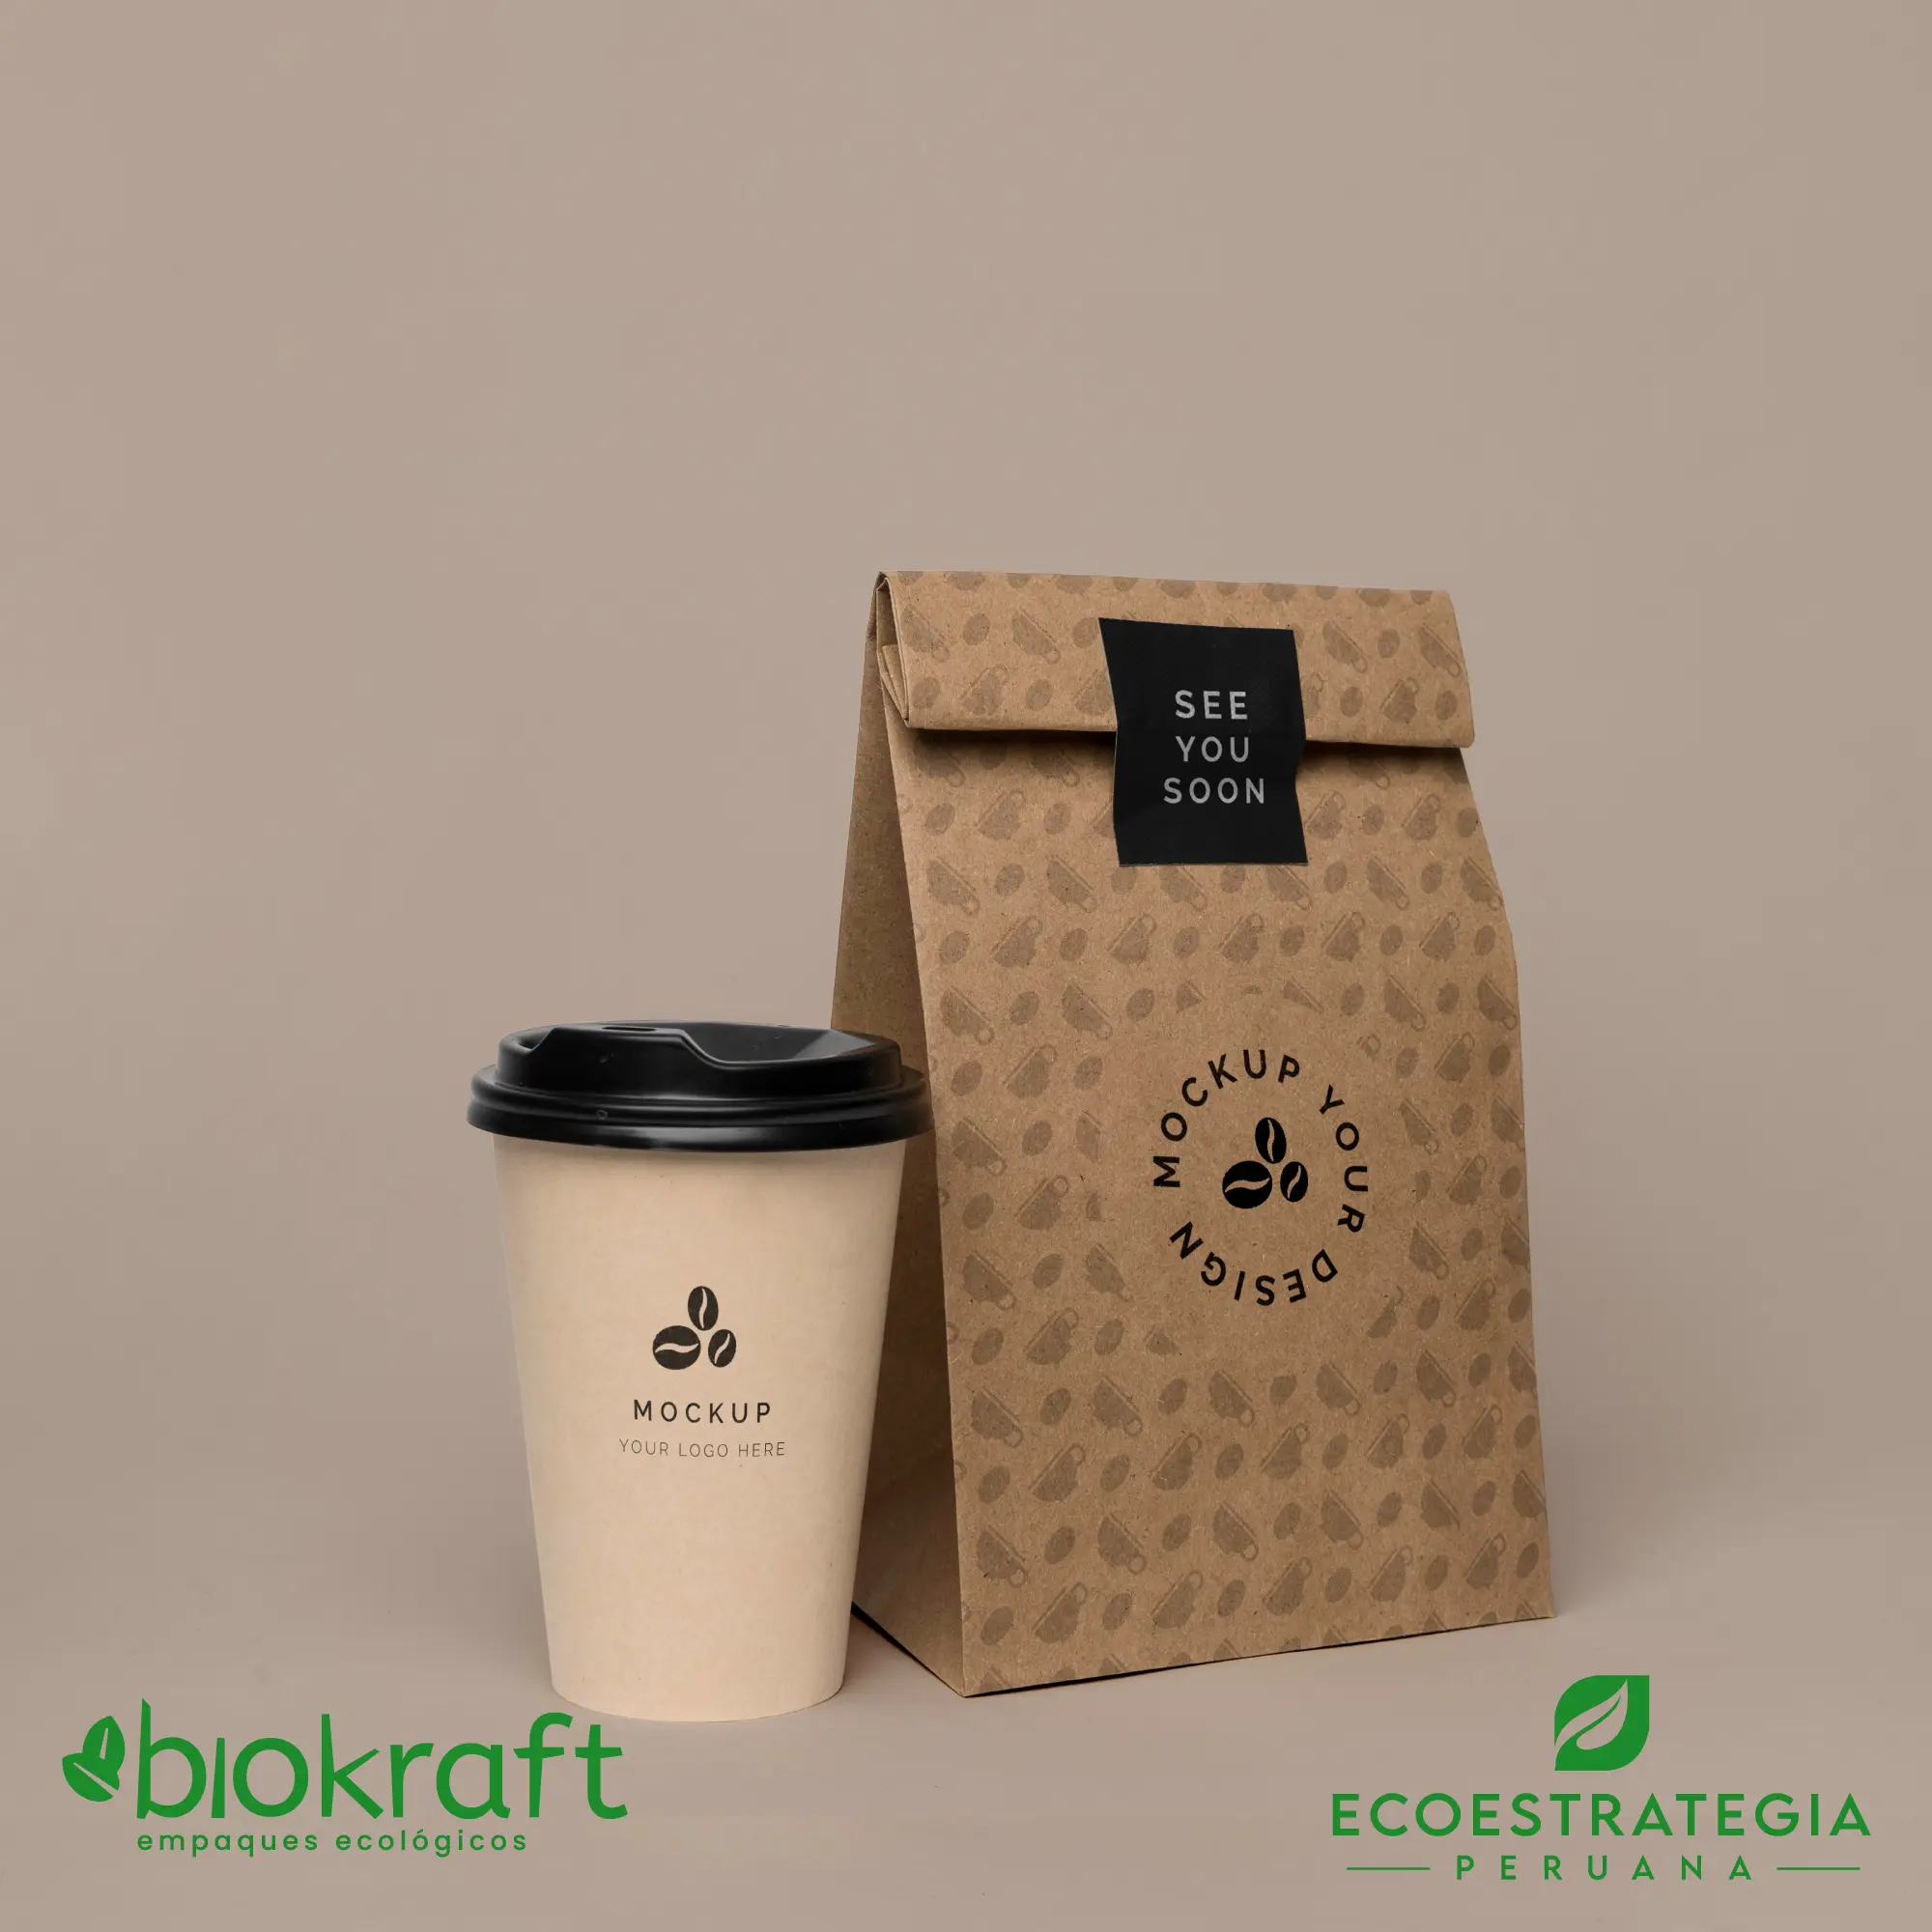 Esta bolsa de papel Kraft tiene un grosor de 60 gr y un peso de 17gr. Bolsas biodegradables y ecológicas reutilizables y personalizadas. Ideal para delivery